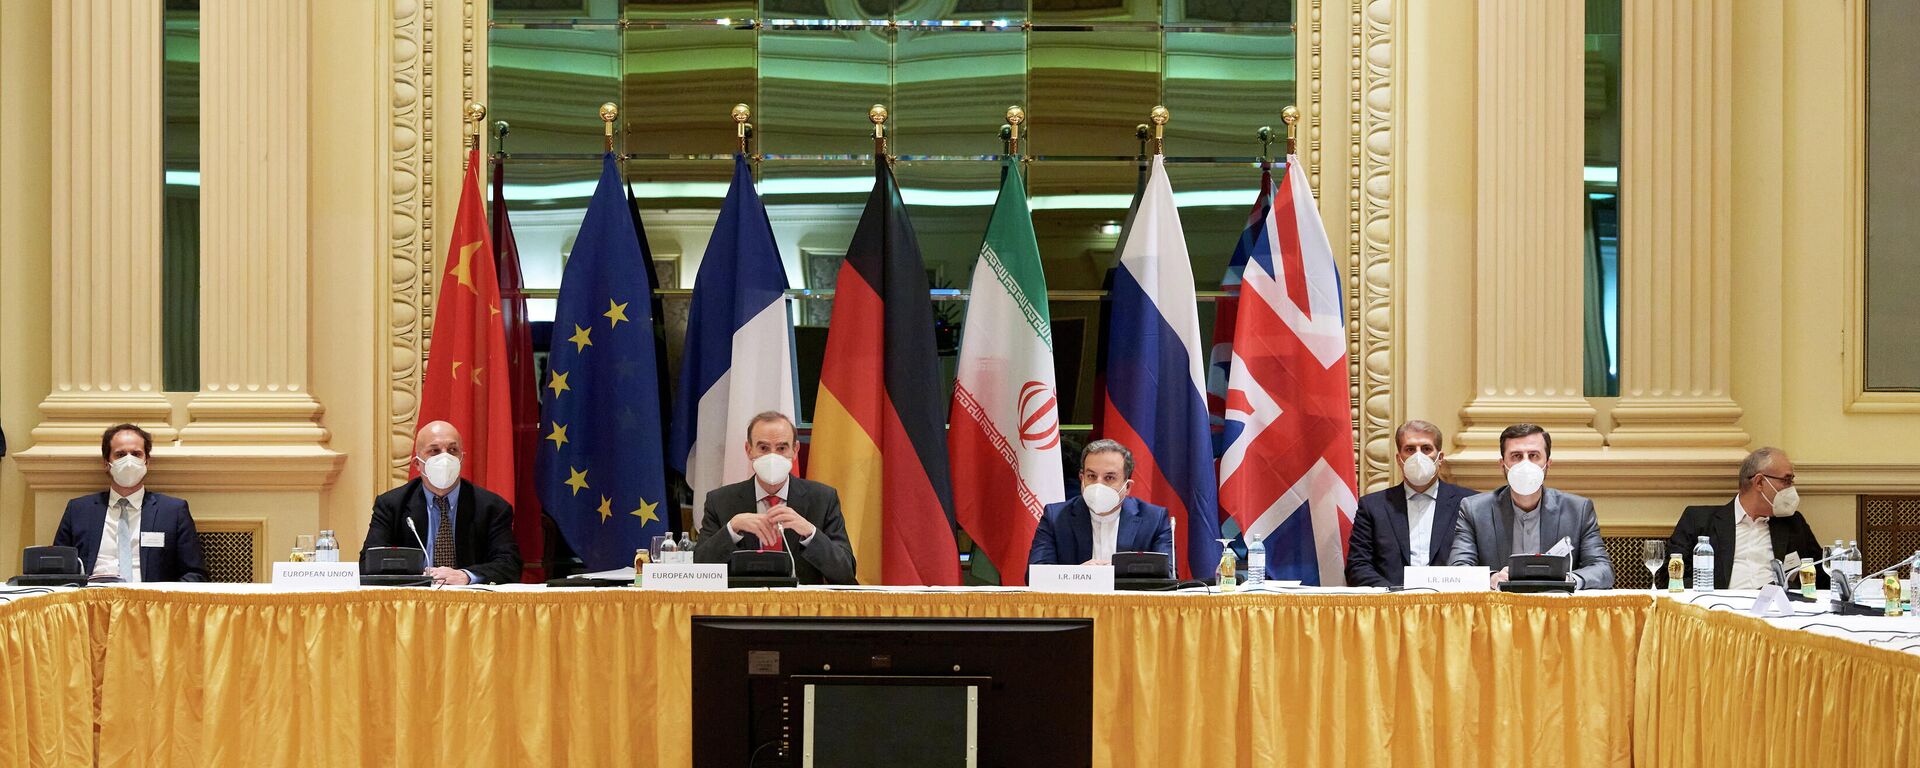 La reunión de la Comisión Conjunta del PAIC en Viena, el 6 de abril de 2021 - Sputnik Mundo, 1920, 06.04.2021